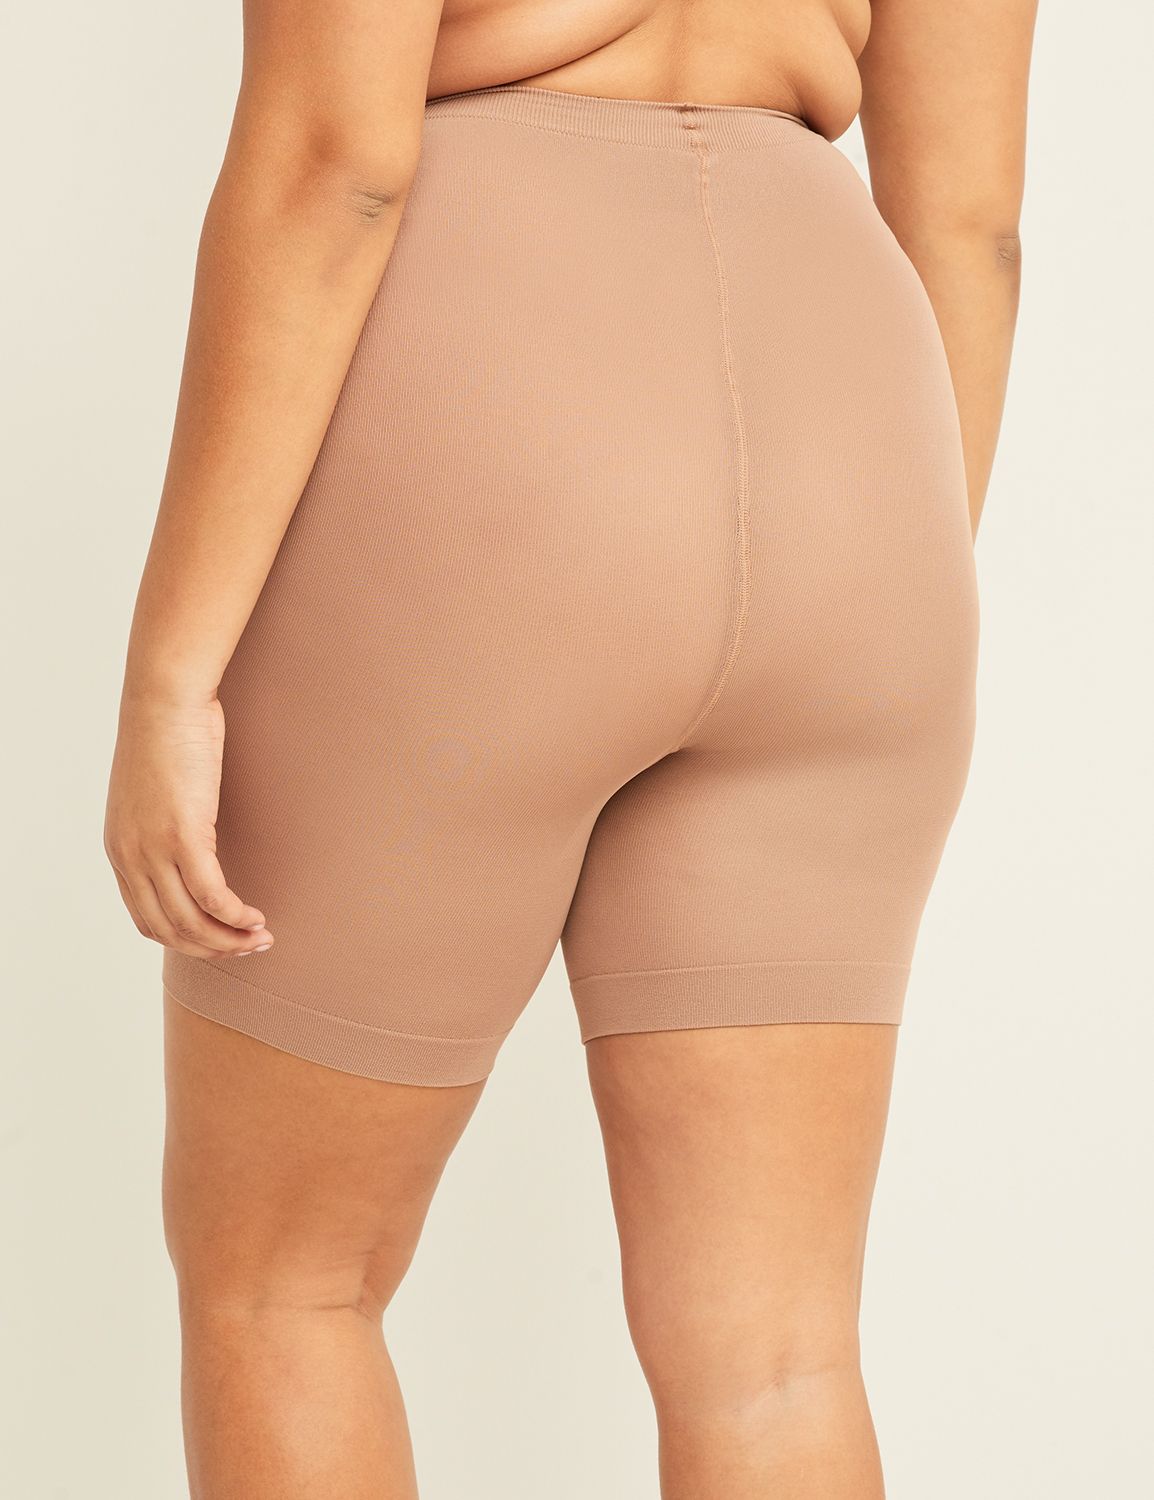 women slip shorts under dress shapewear｜TikTok Search